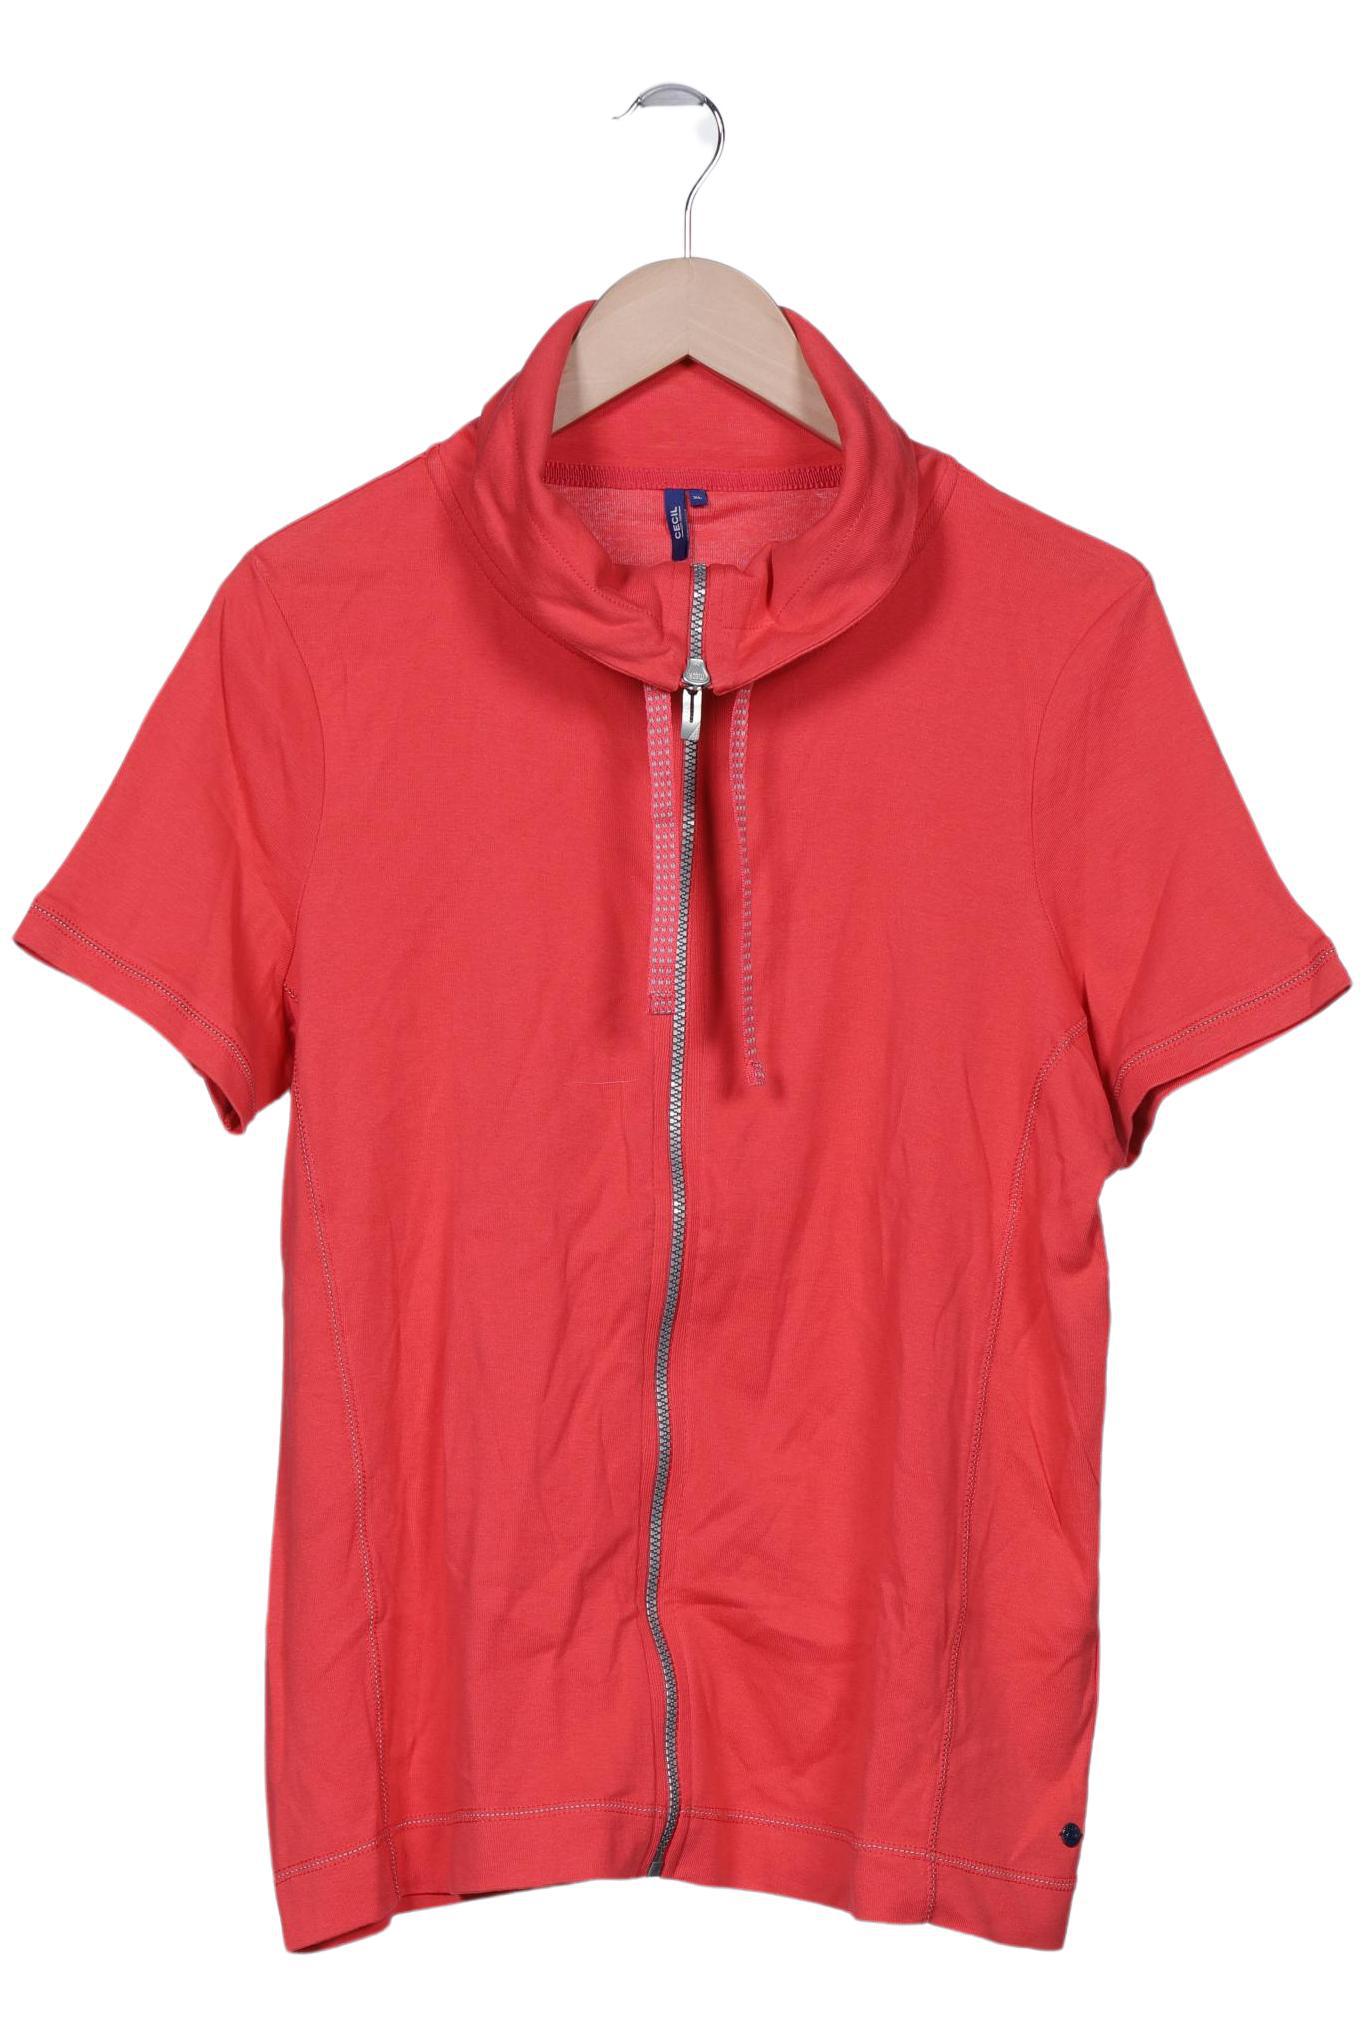 Cecil Damen T-Shirt, orange, Gr. 44 von cecil